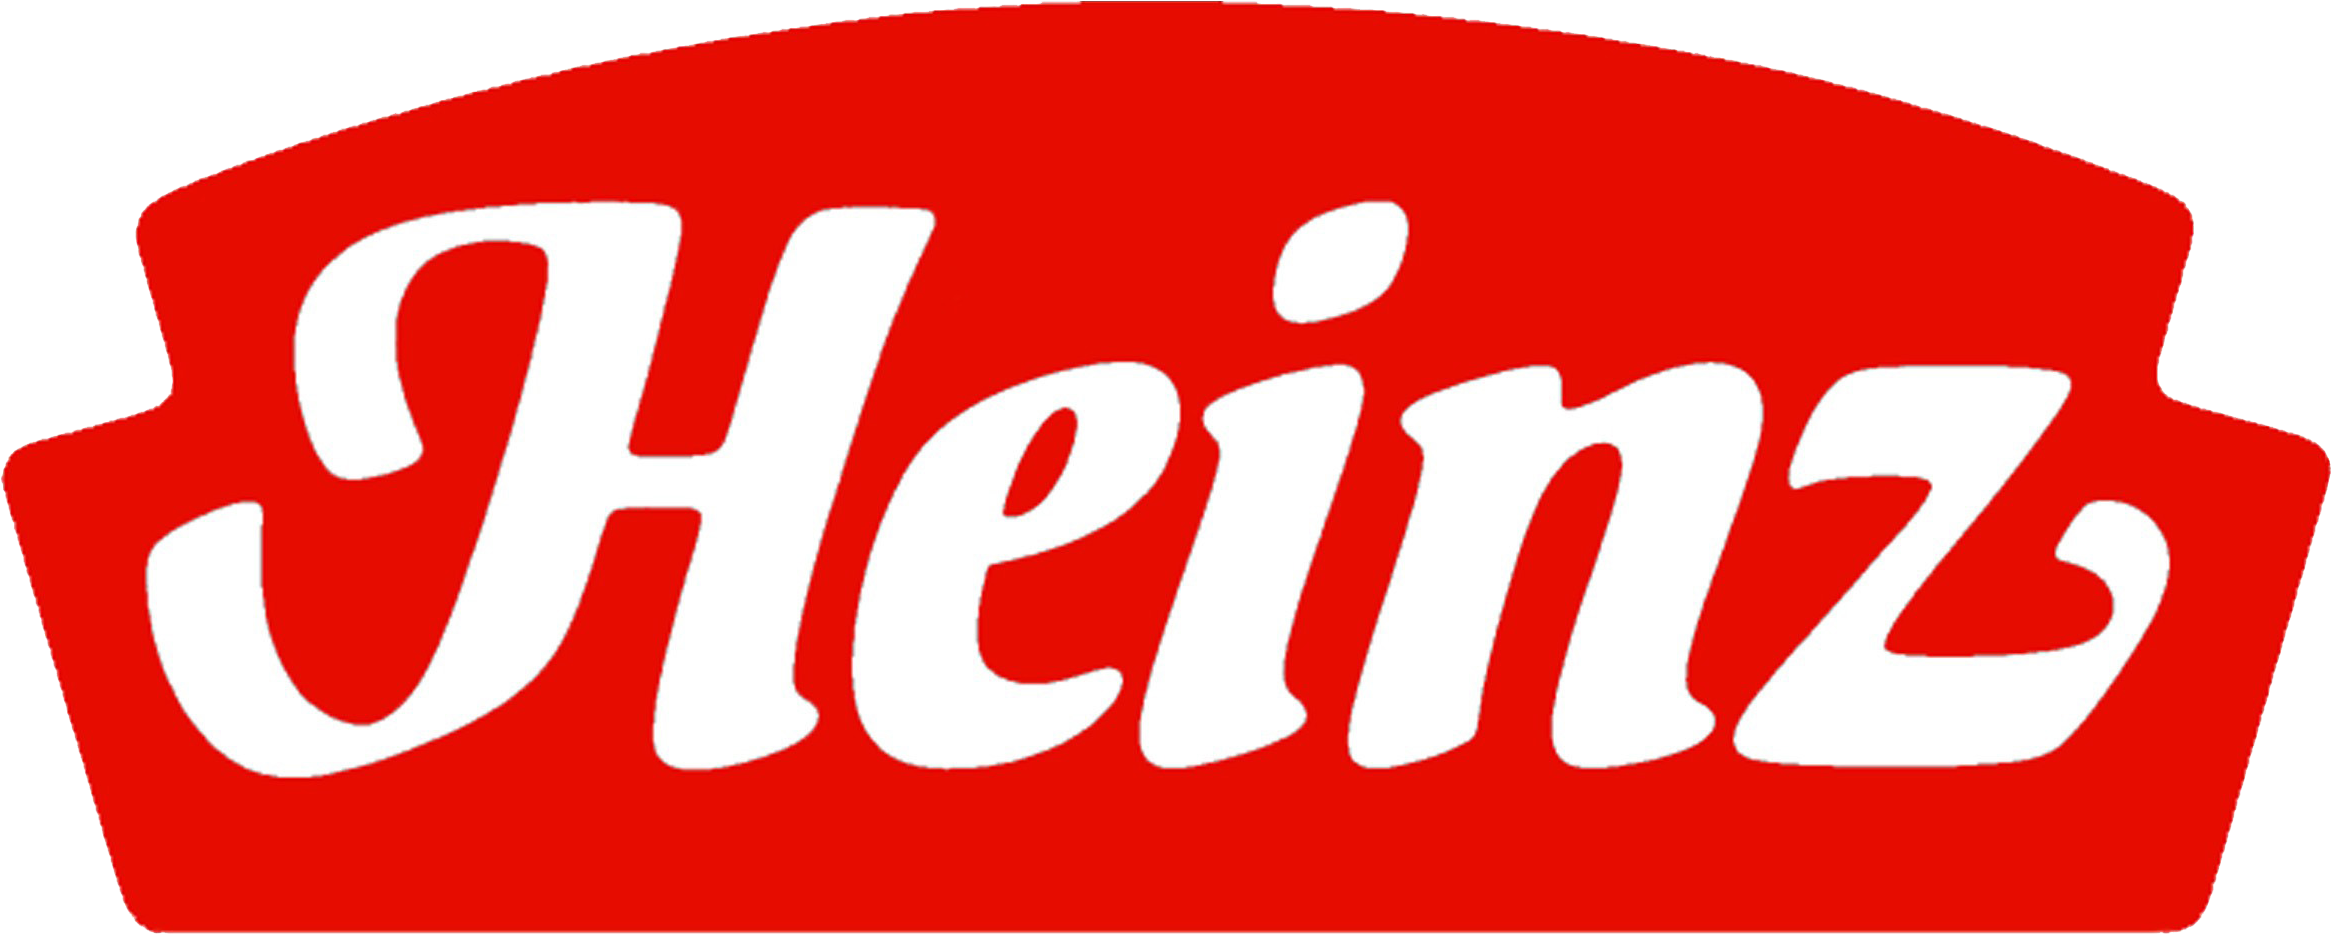 Heinz Logo - Heinz Watties Logo (2406x1203), Png Download